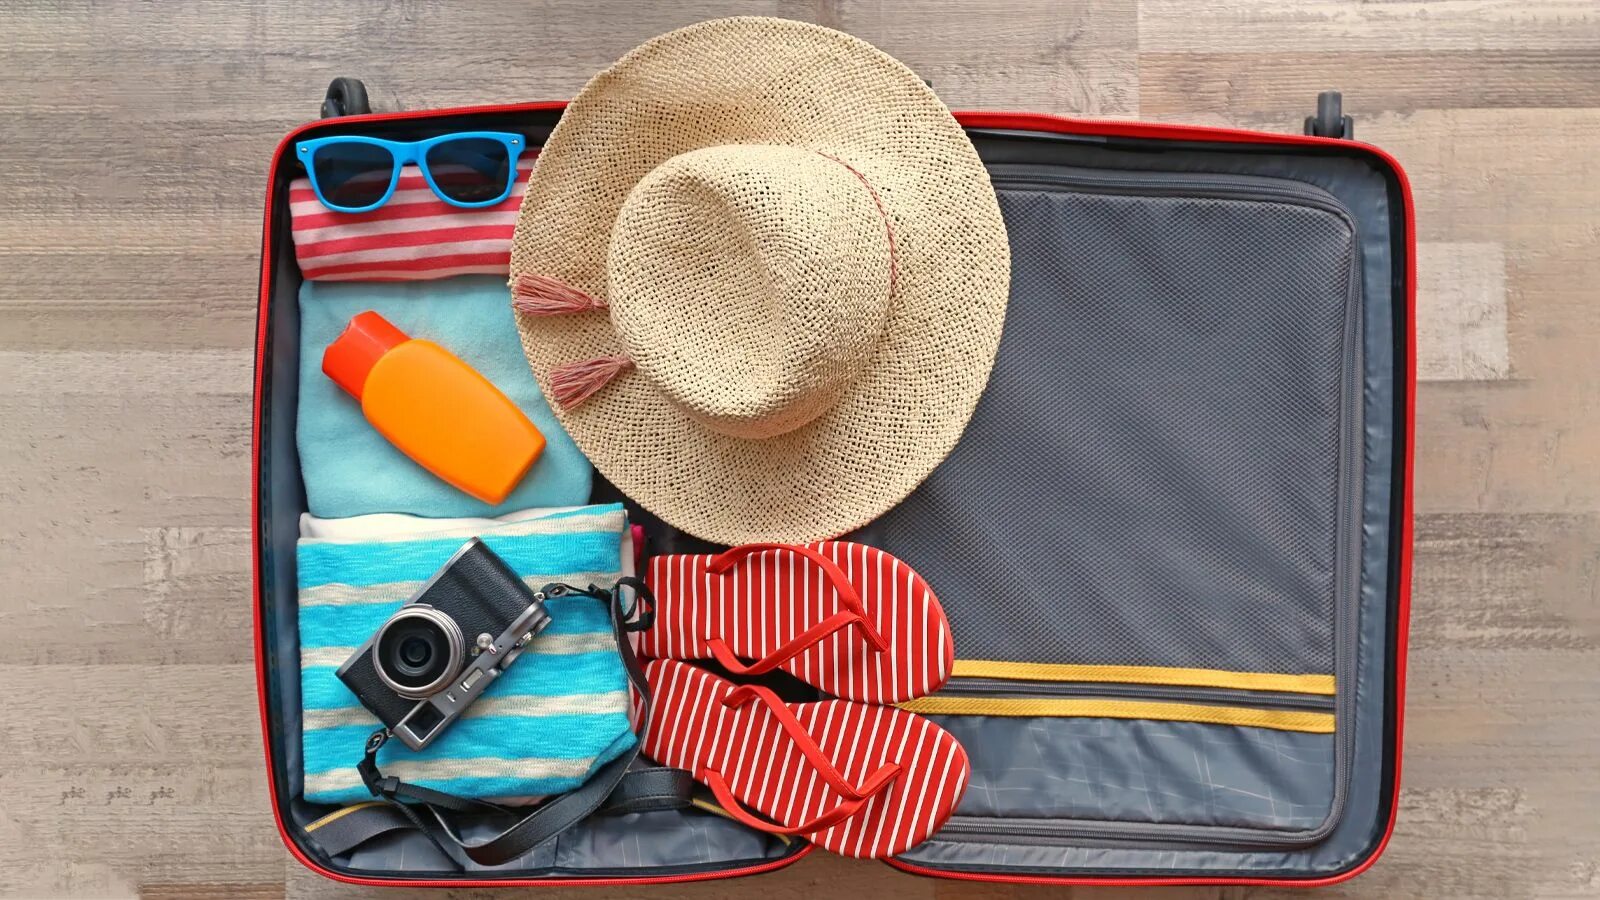 Вещи в путешествие. Необходимые вещи для путешествия. Сбор чемодана. Вещи в отпуск.